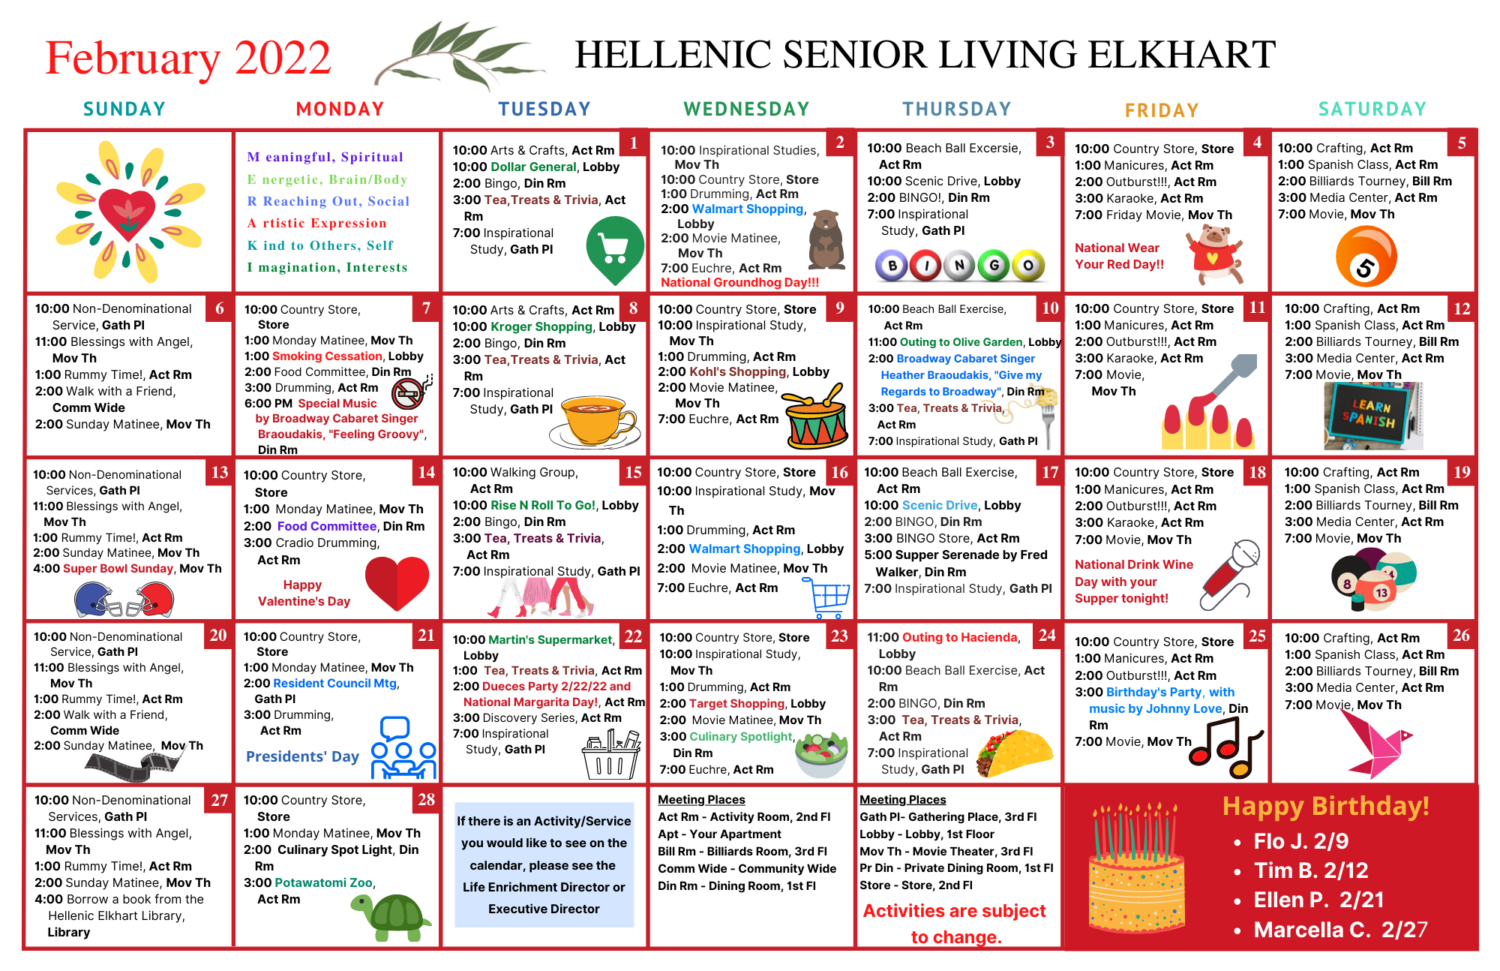 February Activity Calendar for Hellenic Senior Living of Elkhart